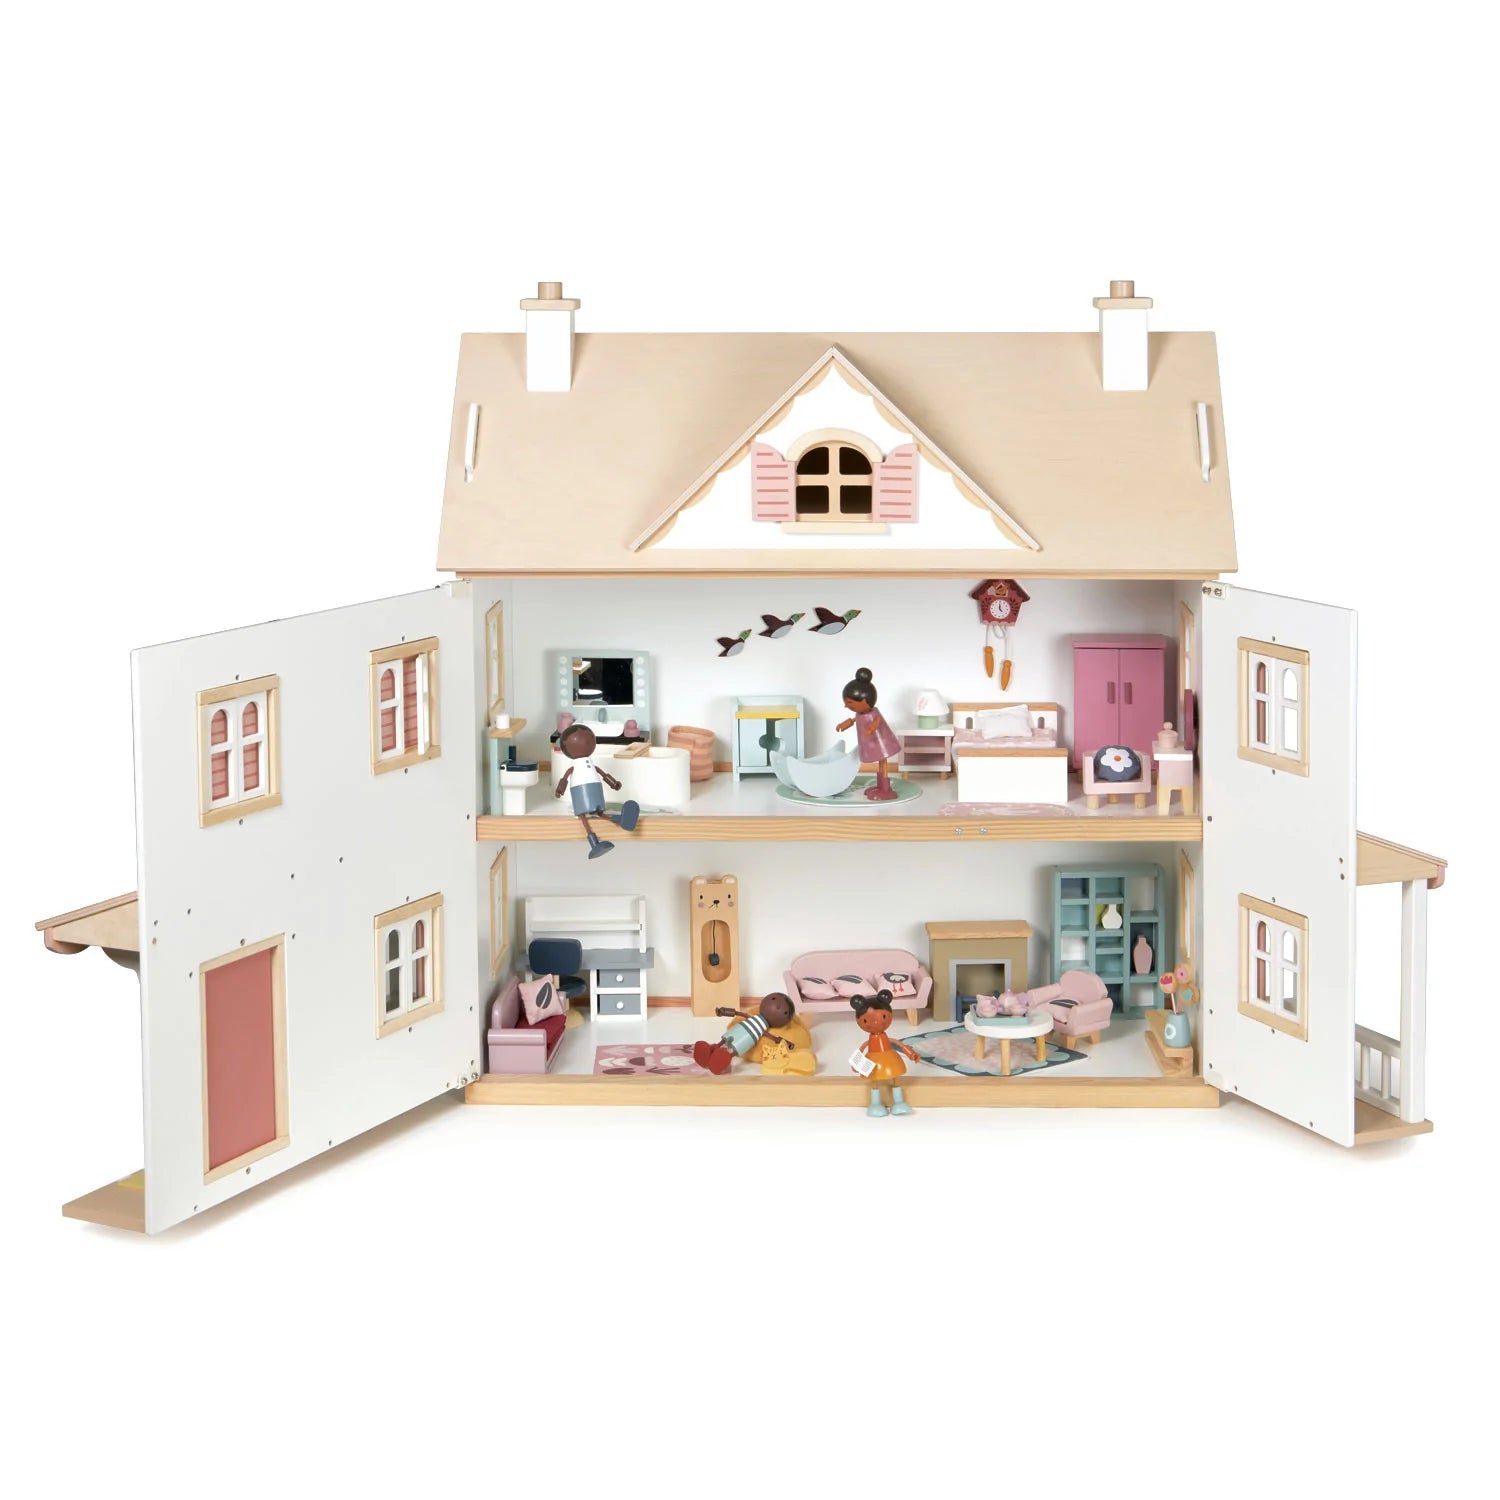 Tender Leaf Toys: domek dla lalek w stylu kolonialnym Humming Bird House - Noski Noski